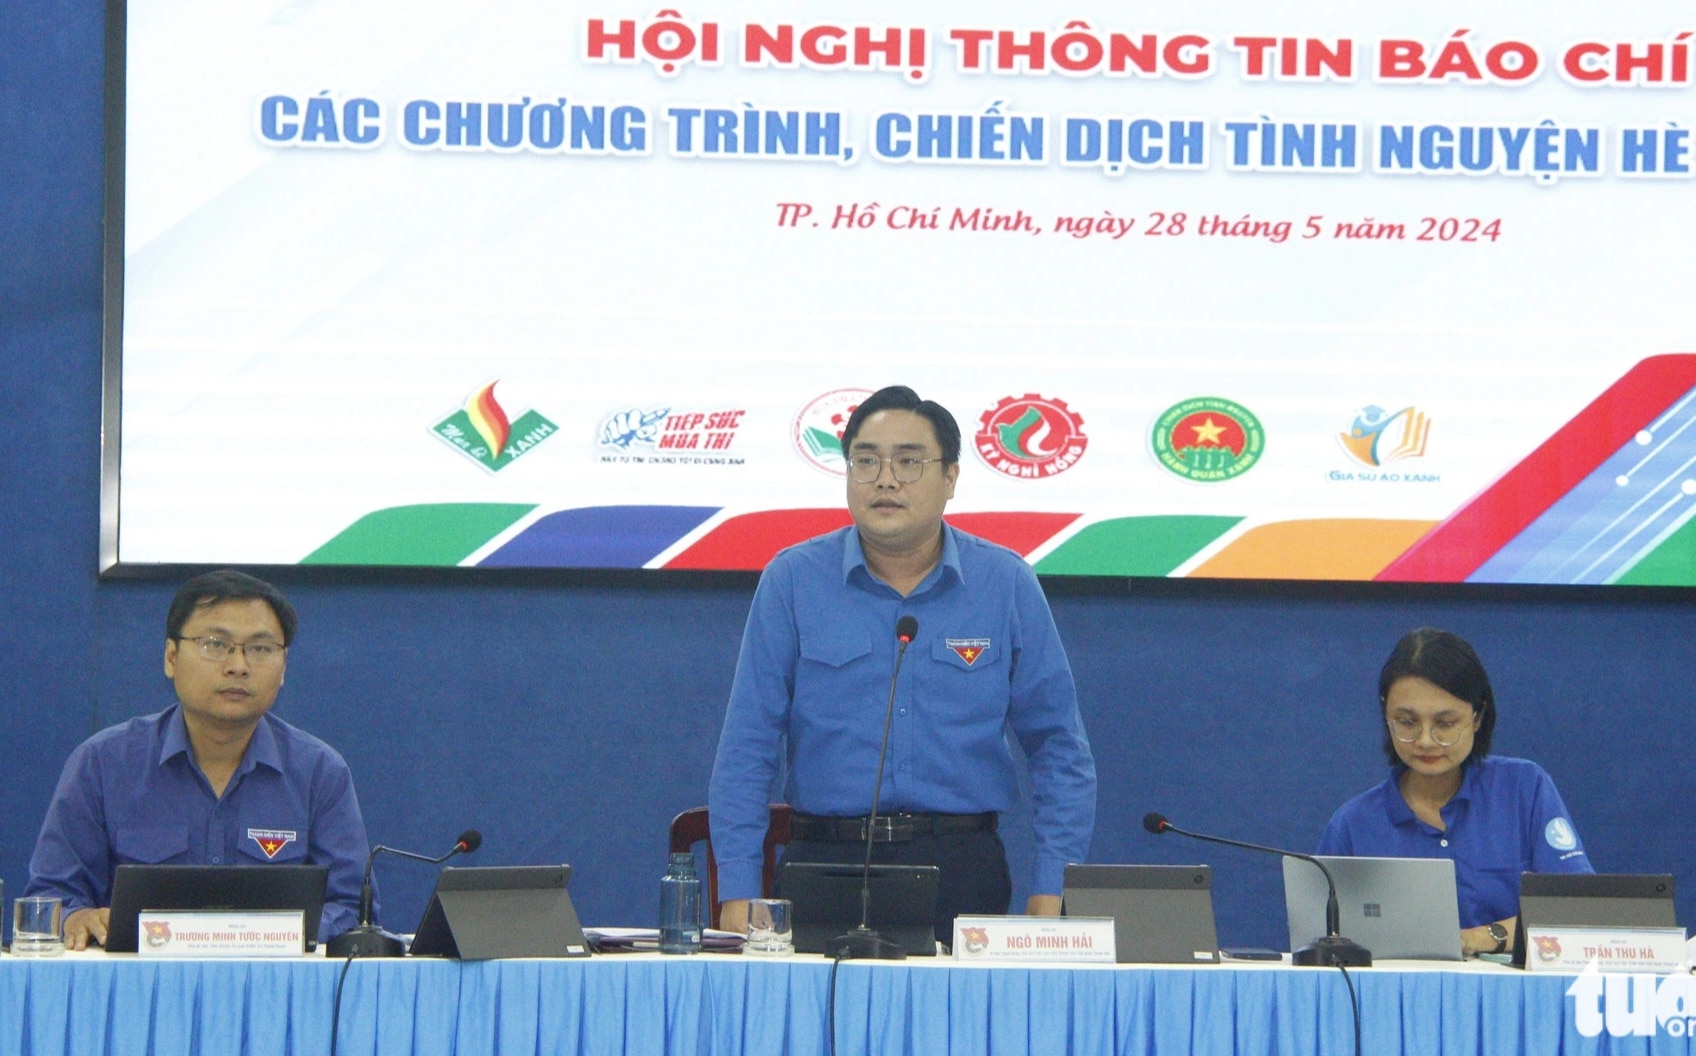 Bí thư Thành Đoàn TP.HCM Ngô Minh Hải (giữa) thông tin đến báo chí về các chương trình, chiến dịch tình nguyện hè 2024 - Ảnh: C.T.